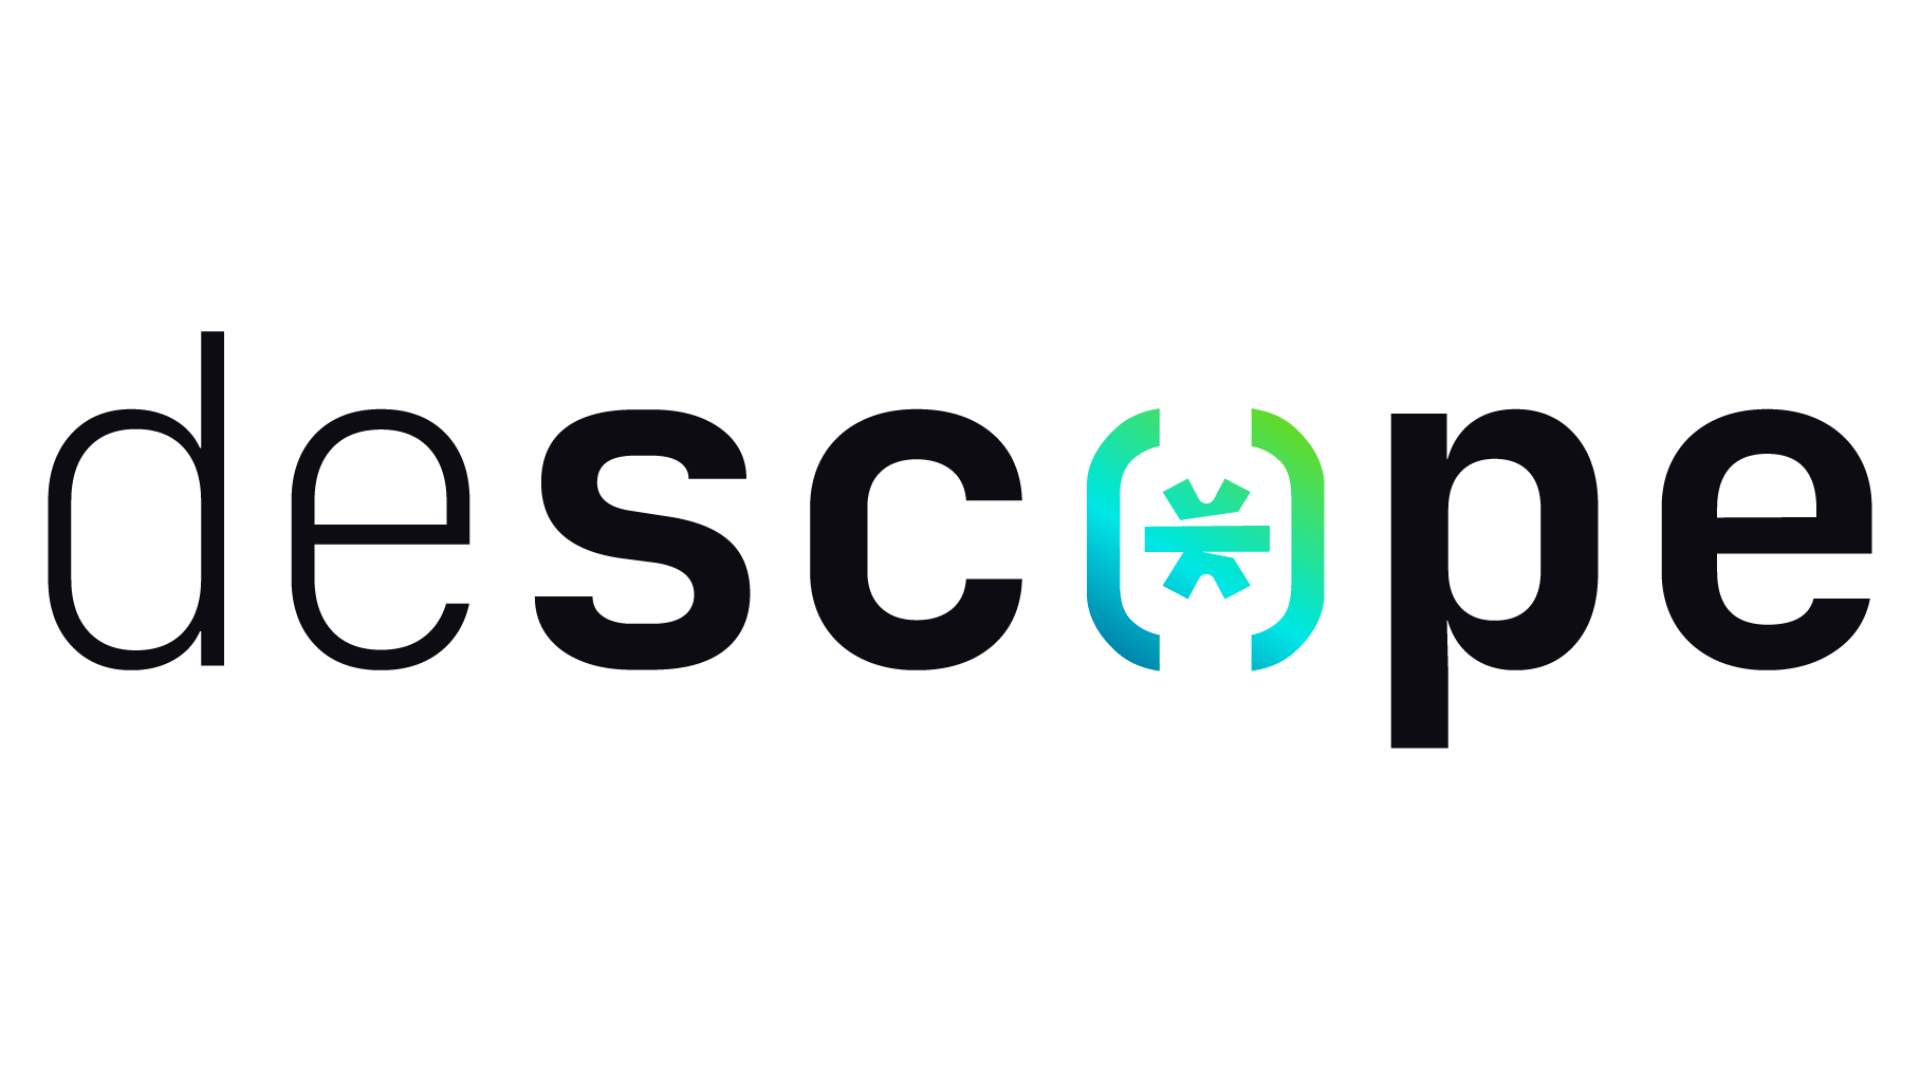 Descope logo